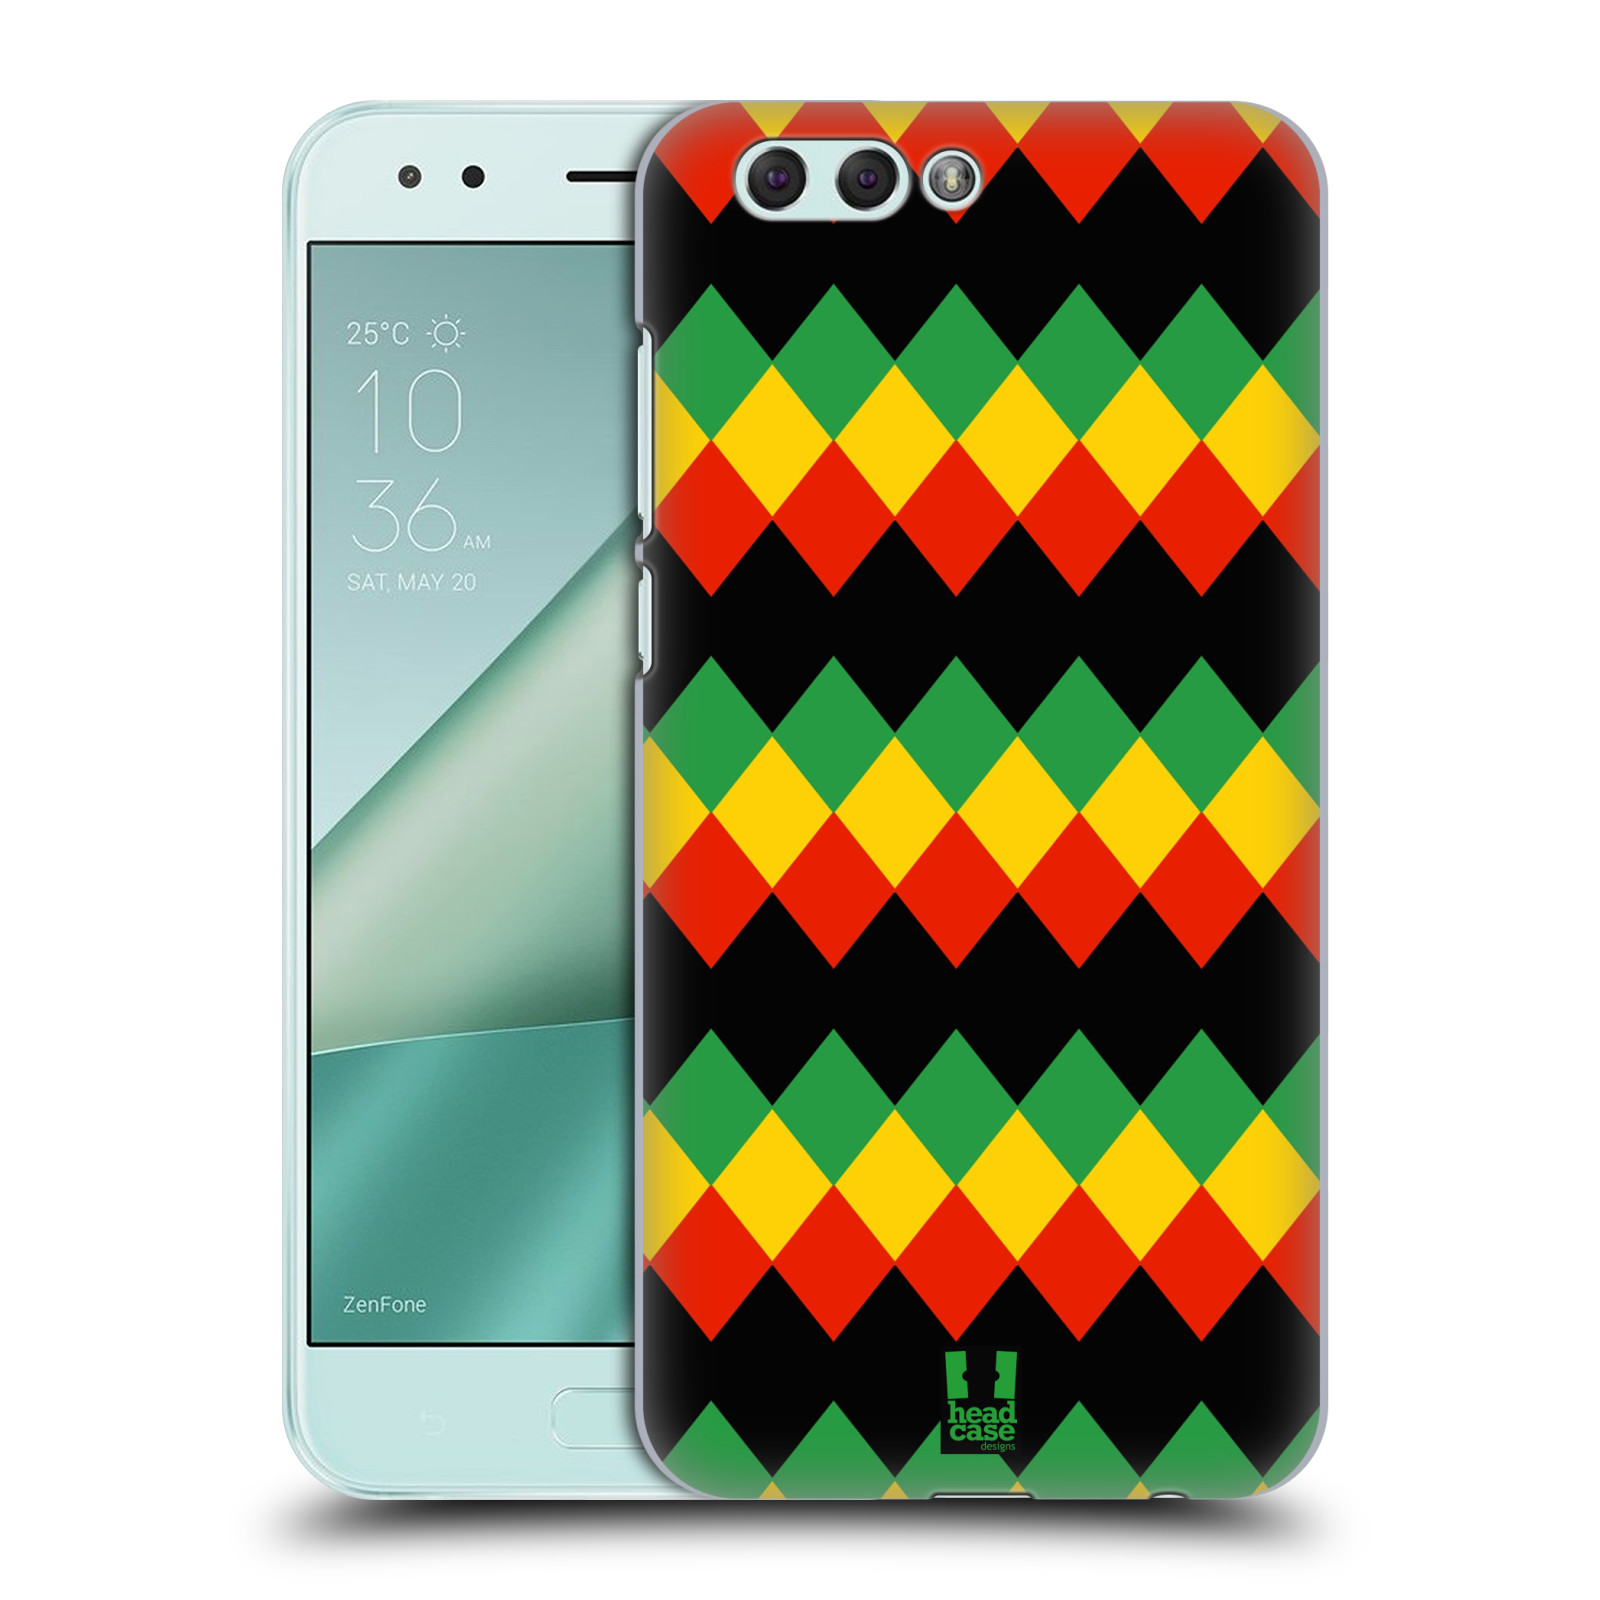 HEAD CASE plastový obal na mobil Asus Zenfone 4 ZE554KL vzor Rasta barevné vzory DIAMANT